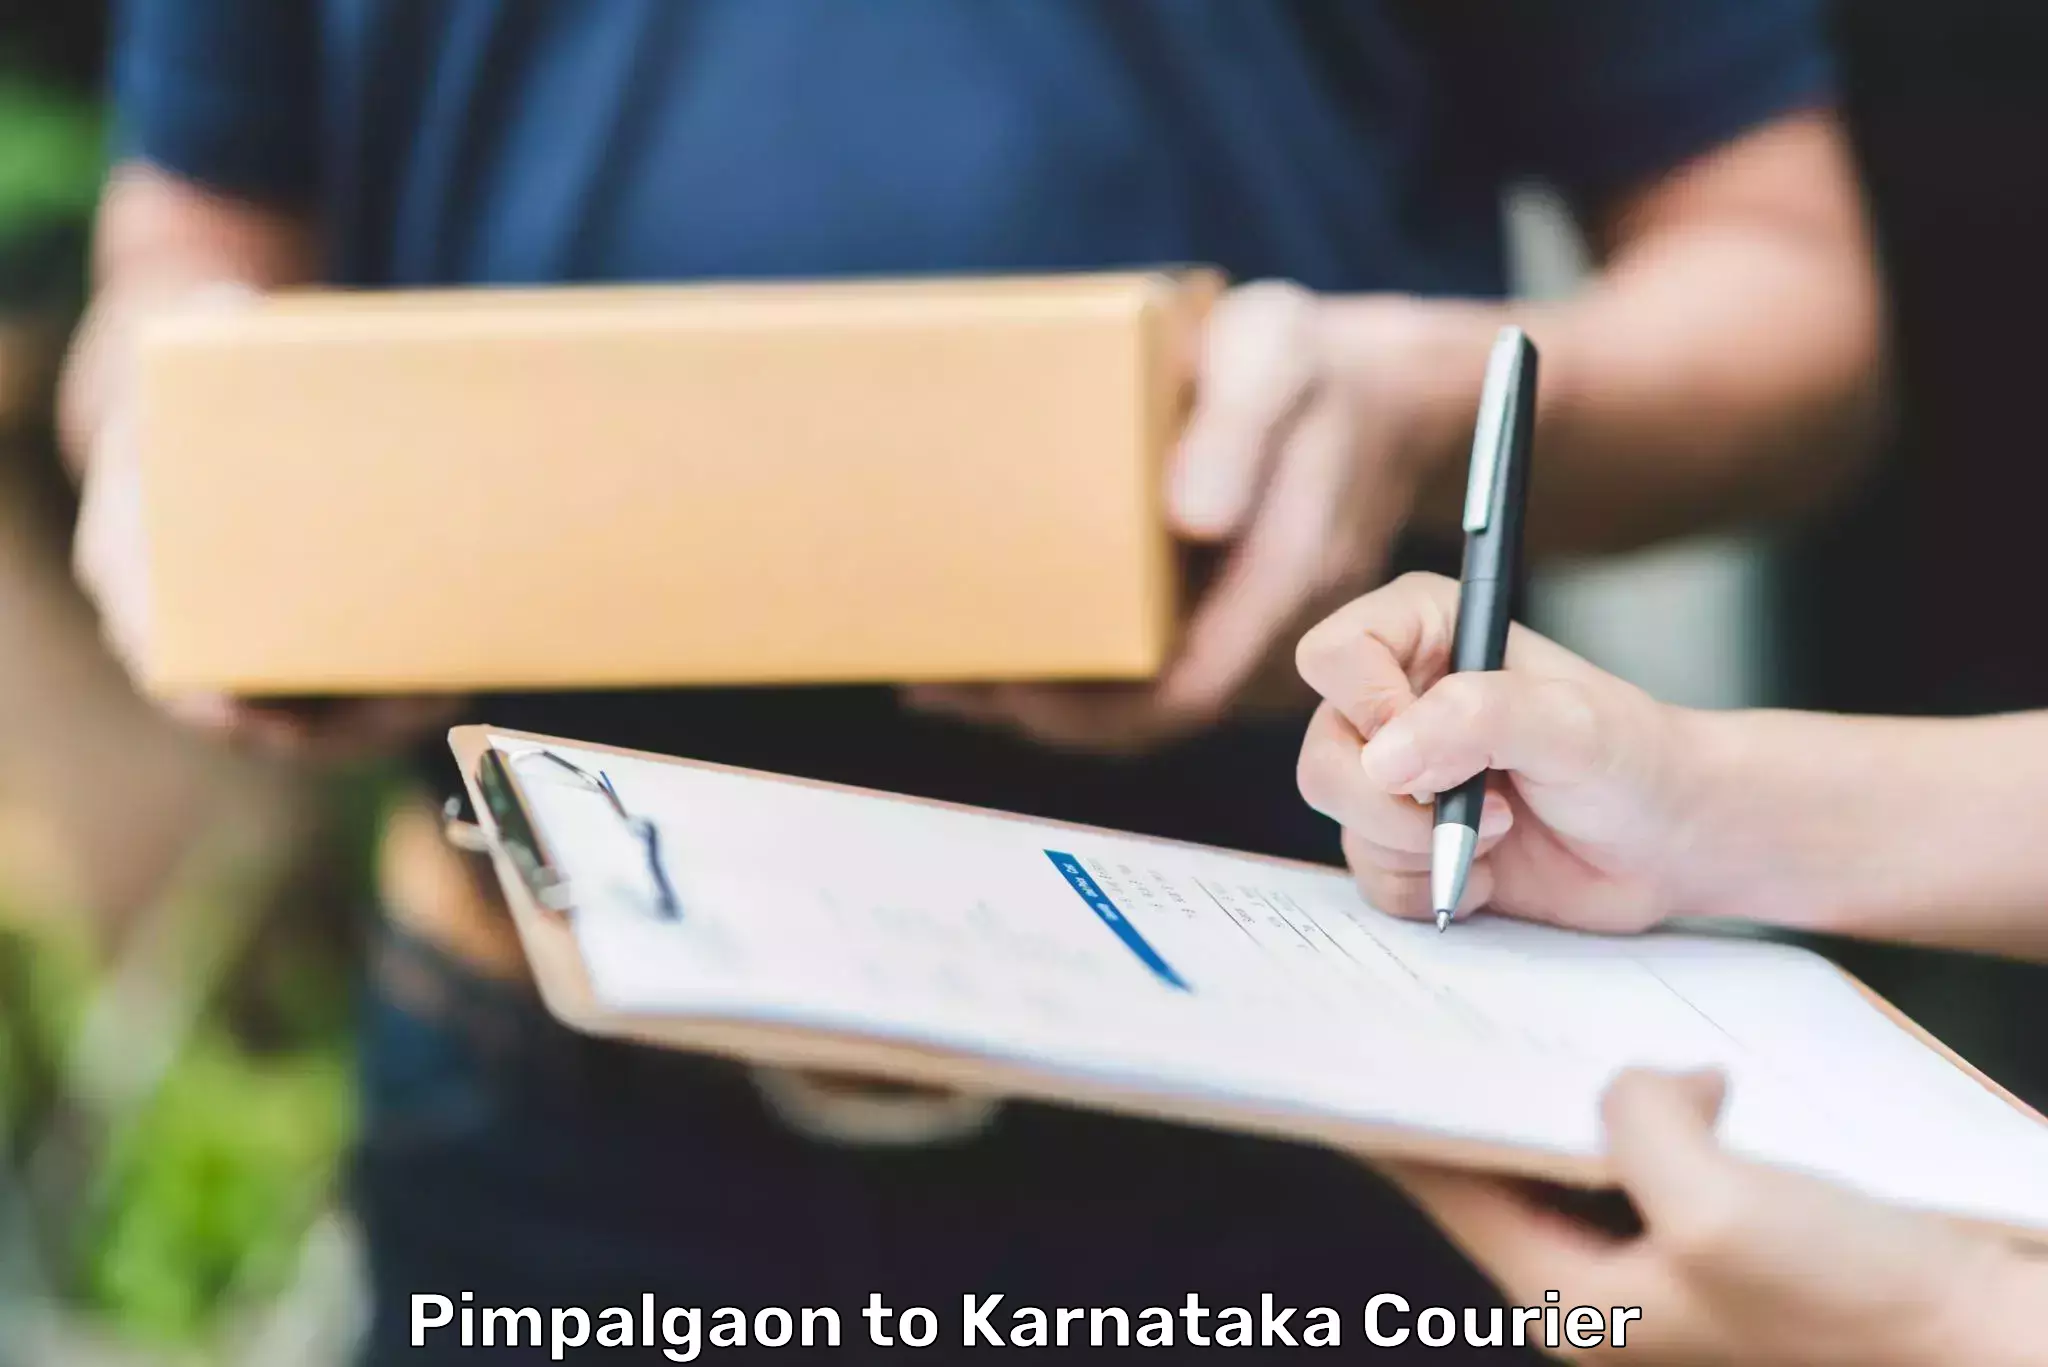 Reliable courier services Pimpalgaon to Kalaburagi